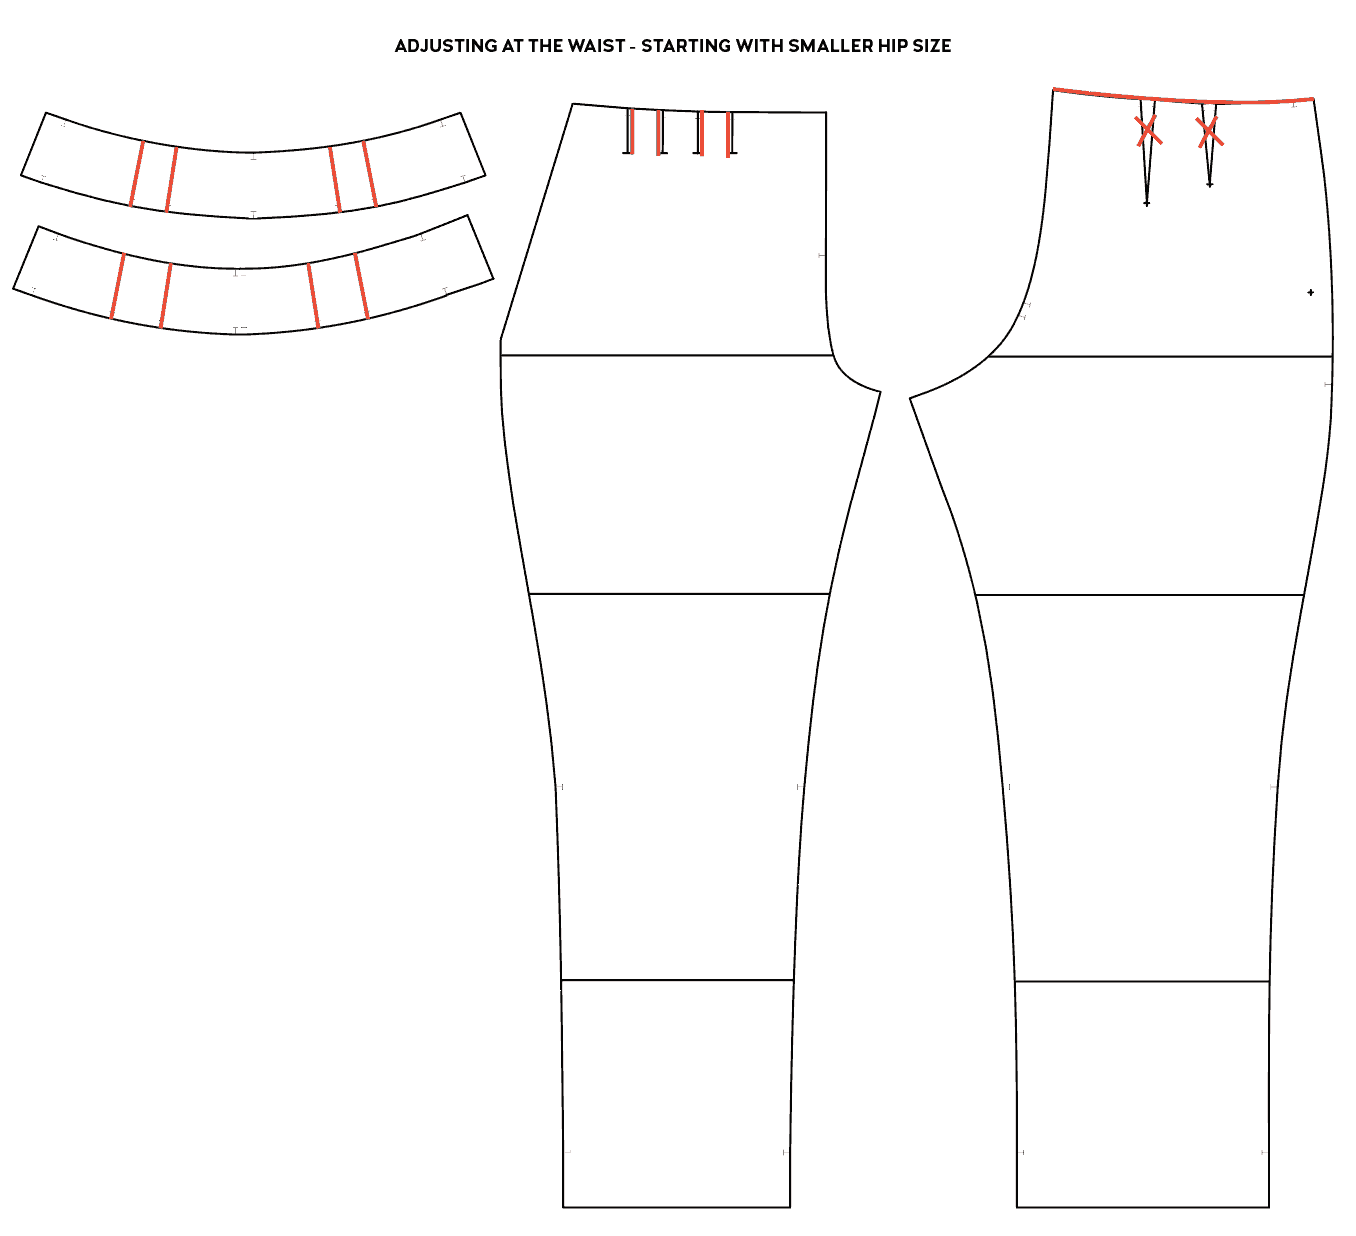 Pants Pattern Adjustments : Hip Dip - Pattern Emporium